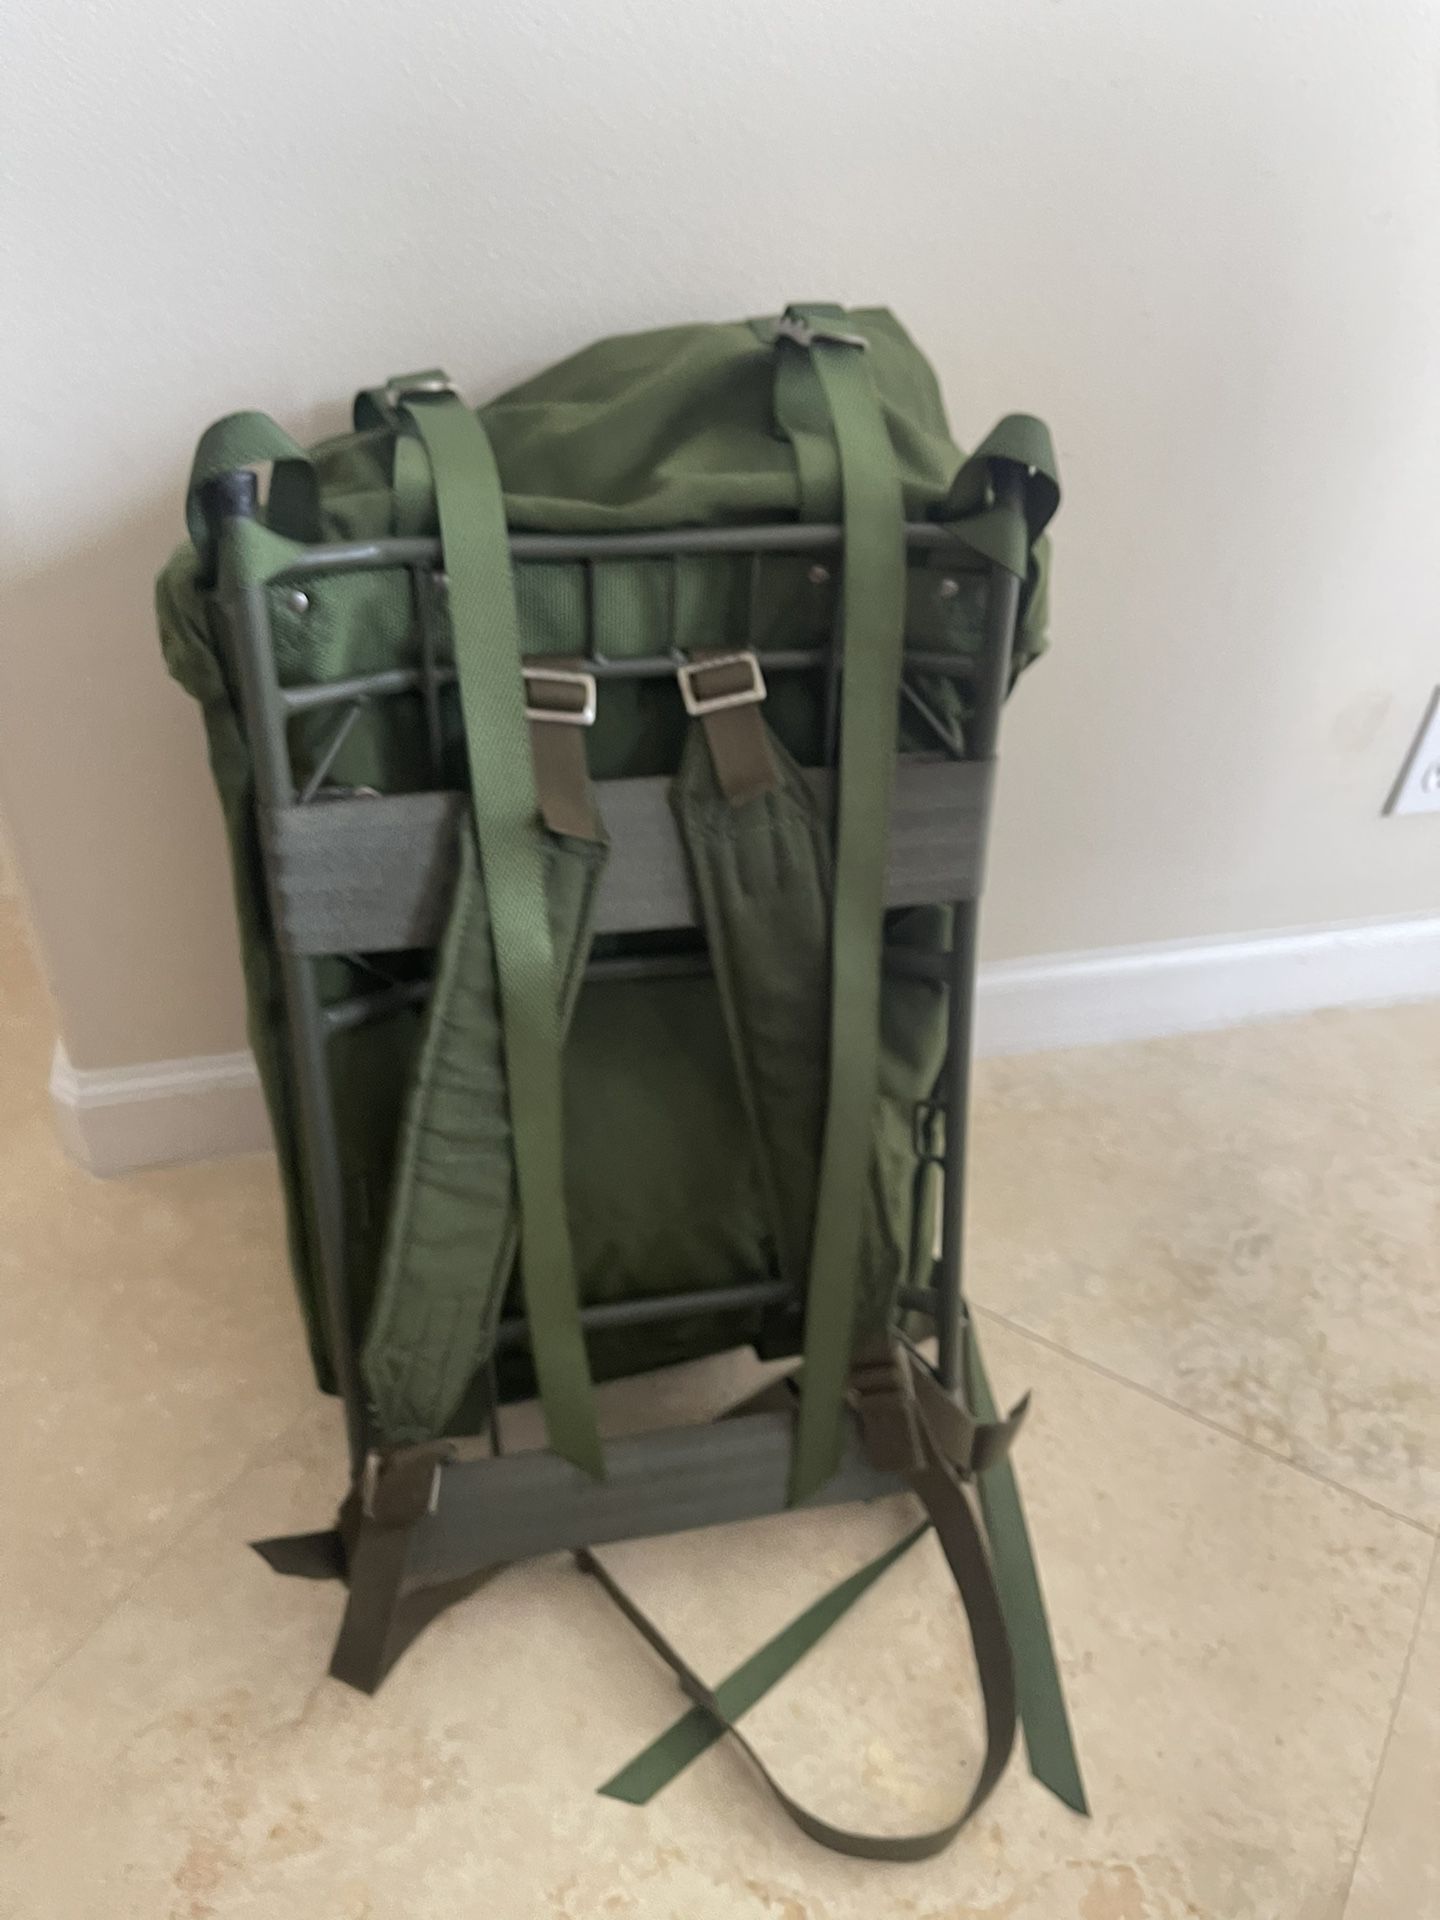 Military Hiking Backpack- LIKE NEW 